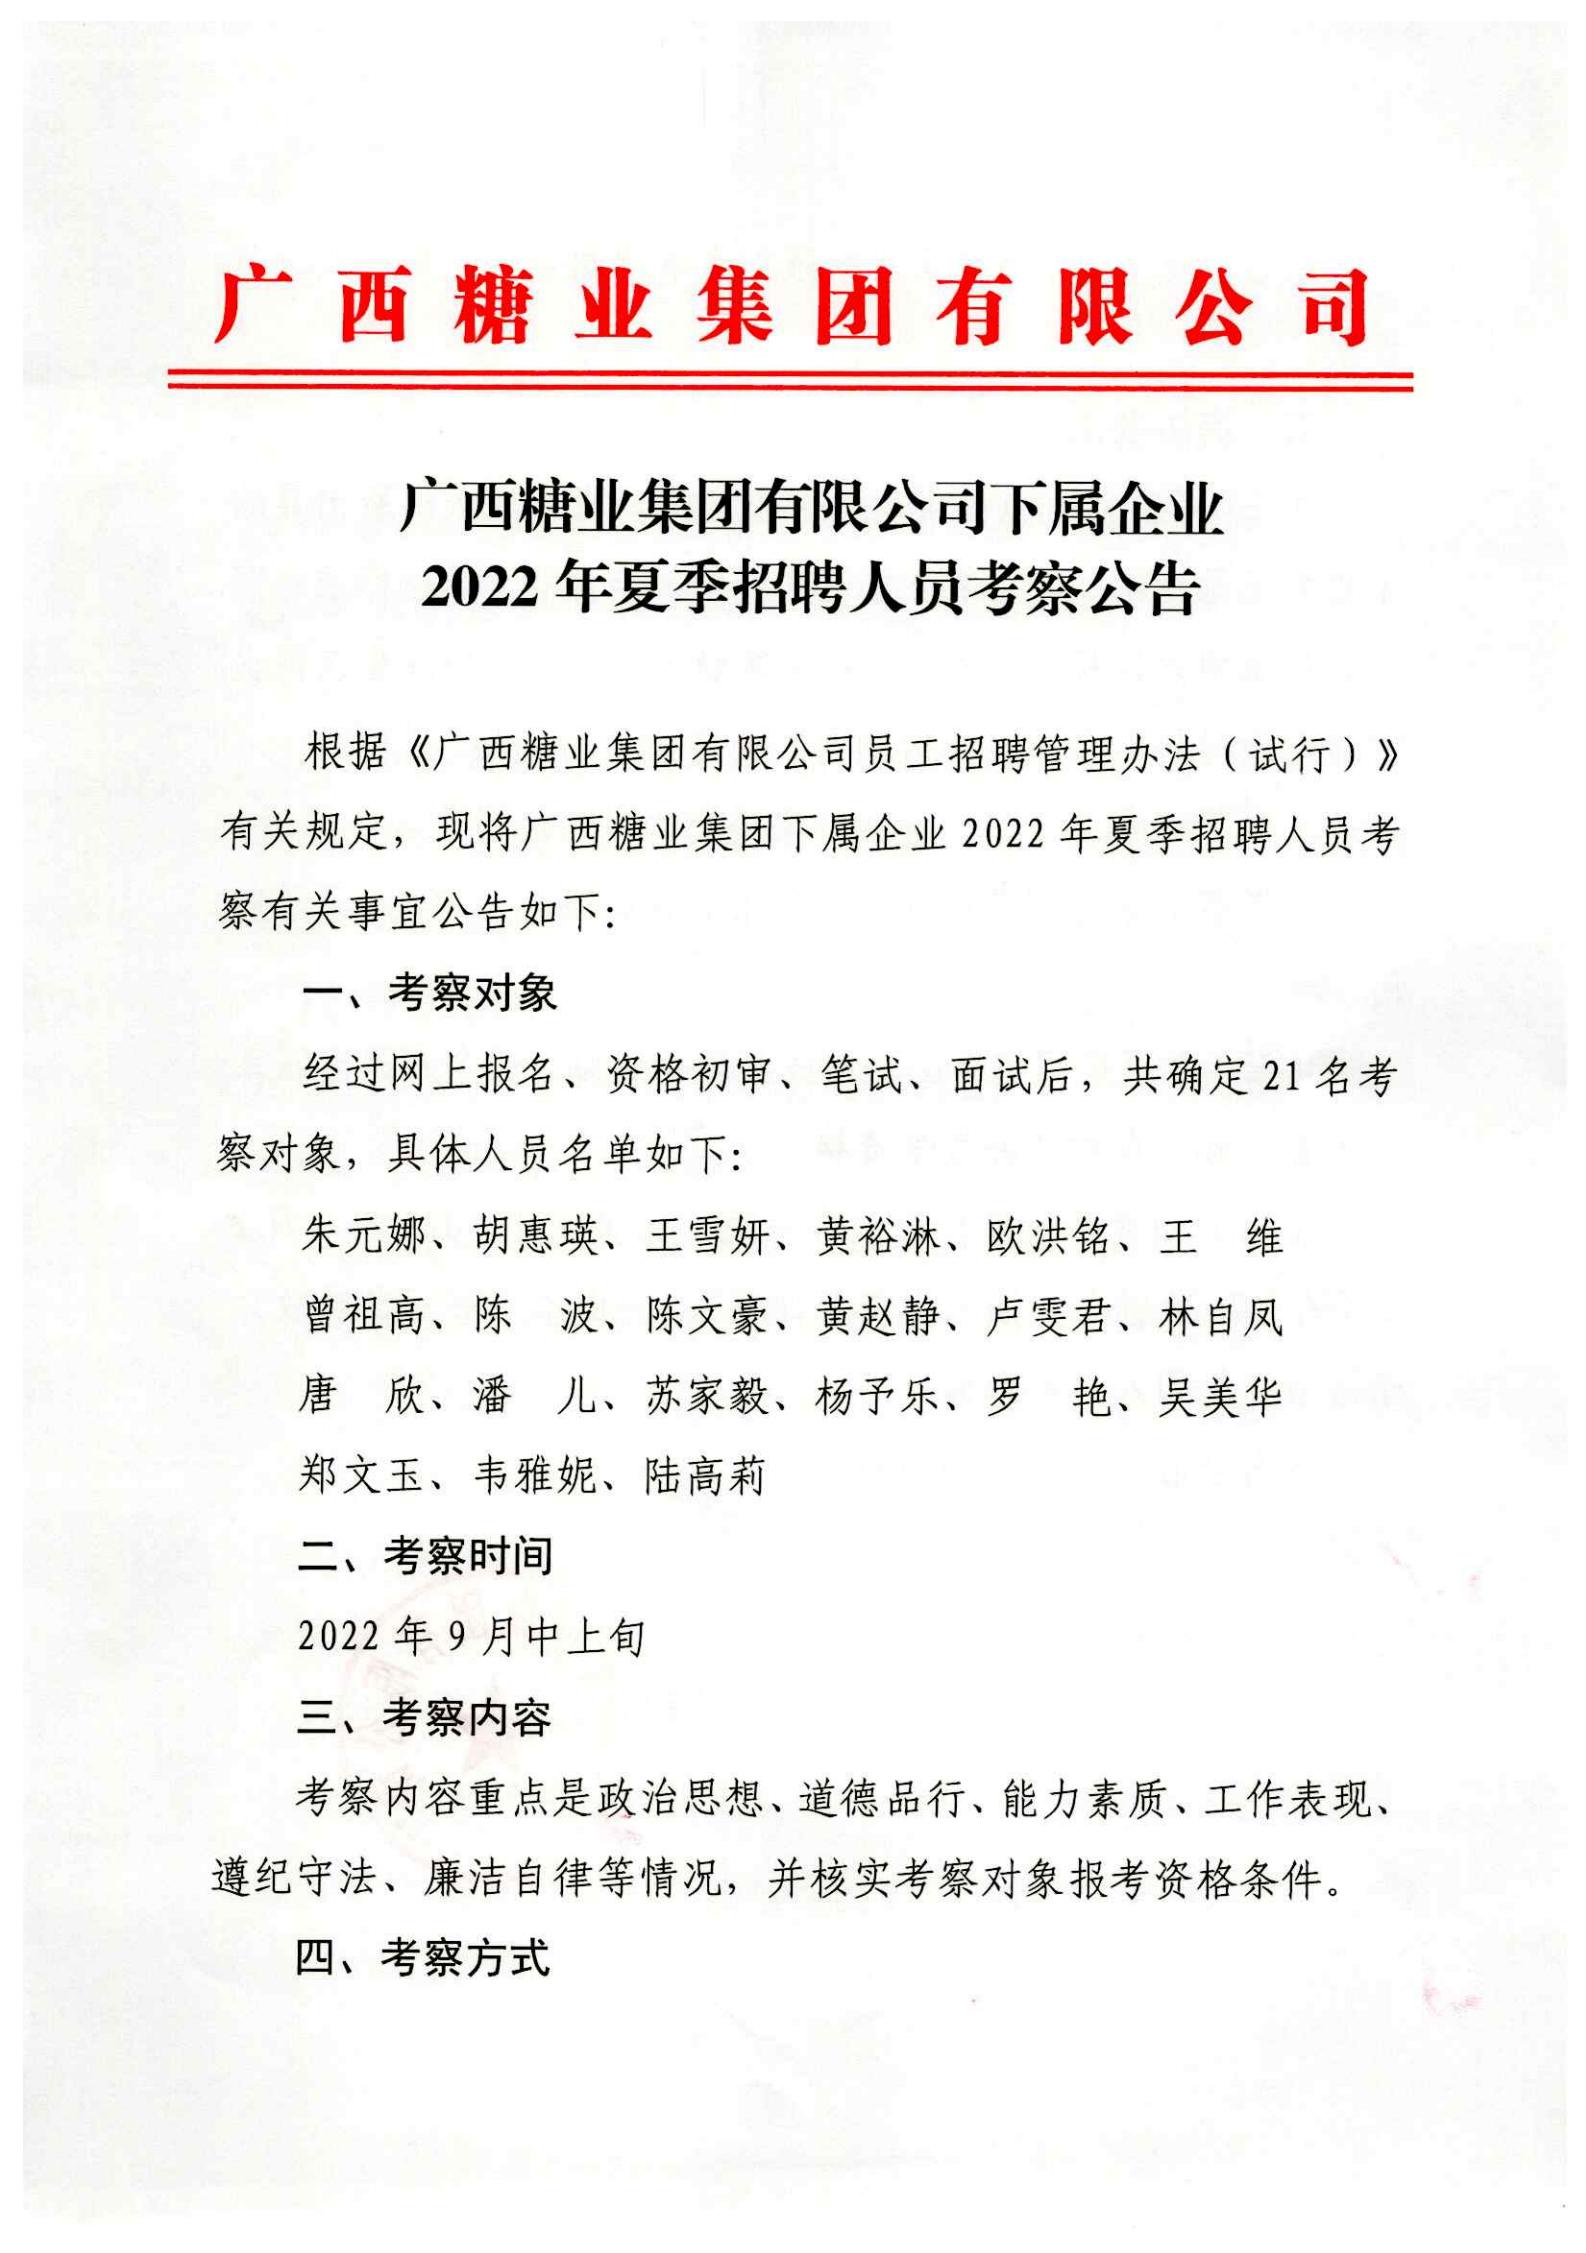 江南平台(中国)有限公司有限公司下属企业2022年夏季招聘人员考察公告_00.jpg